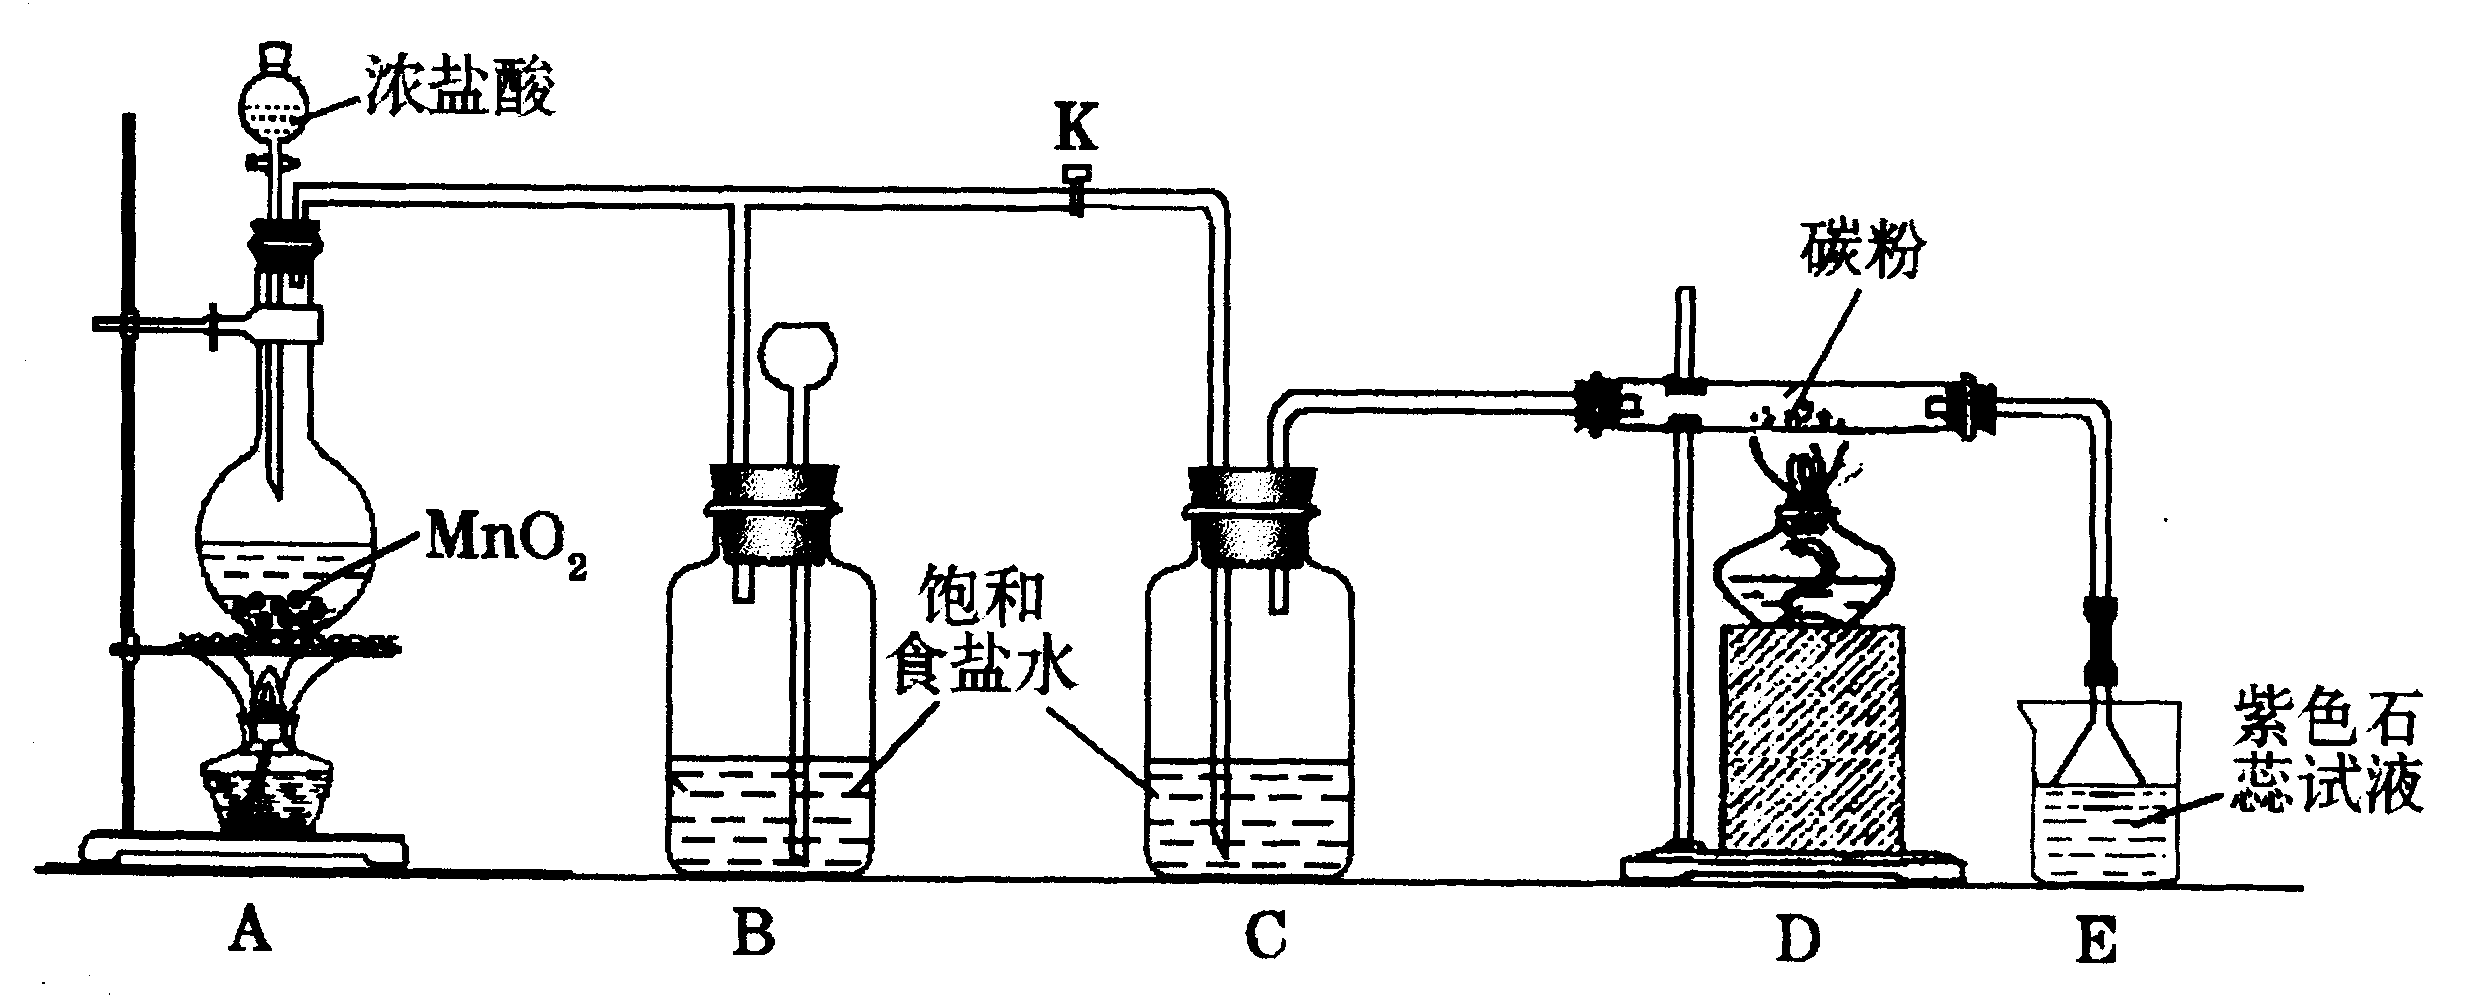 下图是一个制取氯气并以氯气为原料进行特定反应的装置